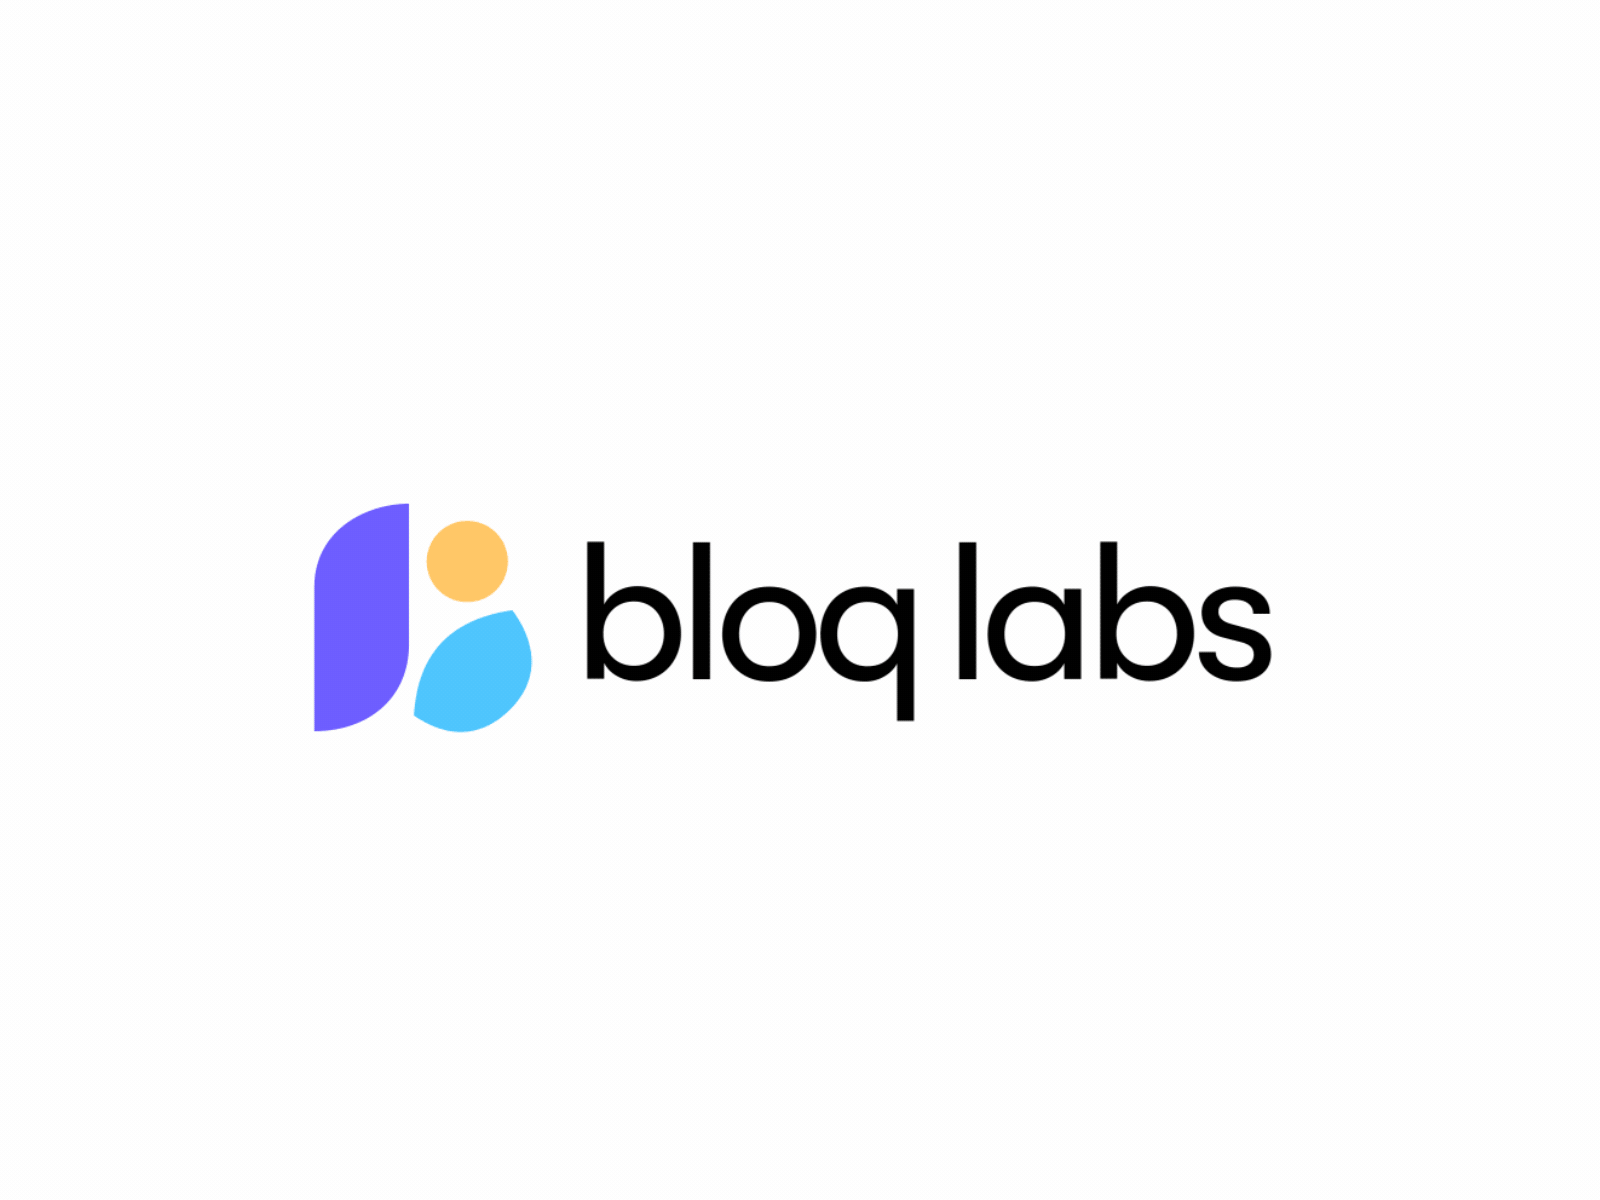 BloqLabs Logo animation animated logo animation branding branding animation circle logo logo animation lottie motion graphics motion logo ui